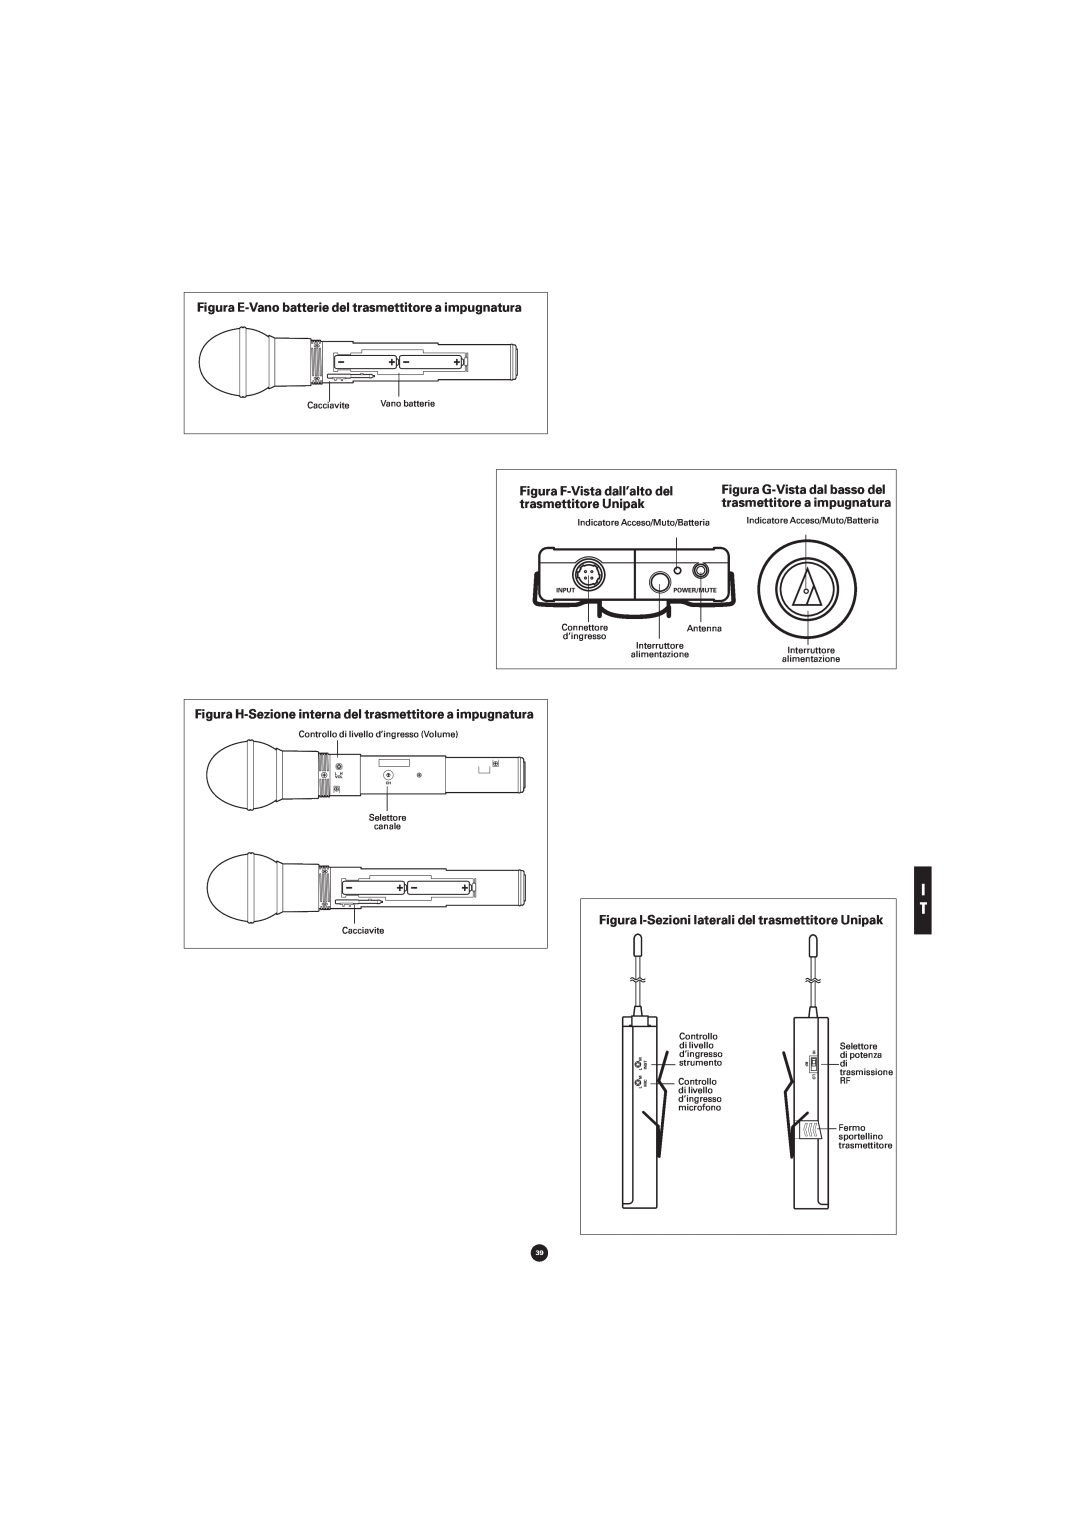 Audio-Technica ATW-702, ATW-701P, ATW-701H, ATW-701G manual Figura E-Vano batterie del trasmettitore a impugnatura 